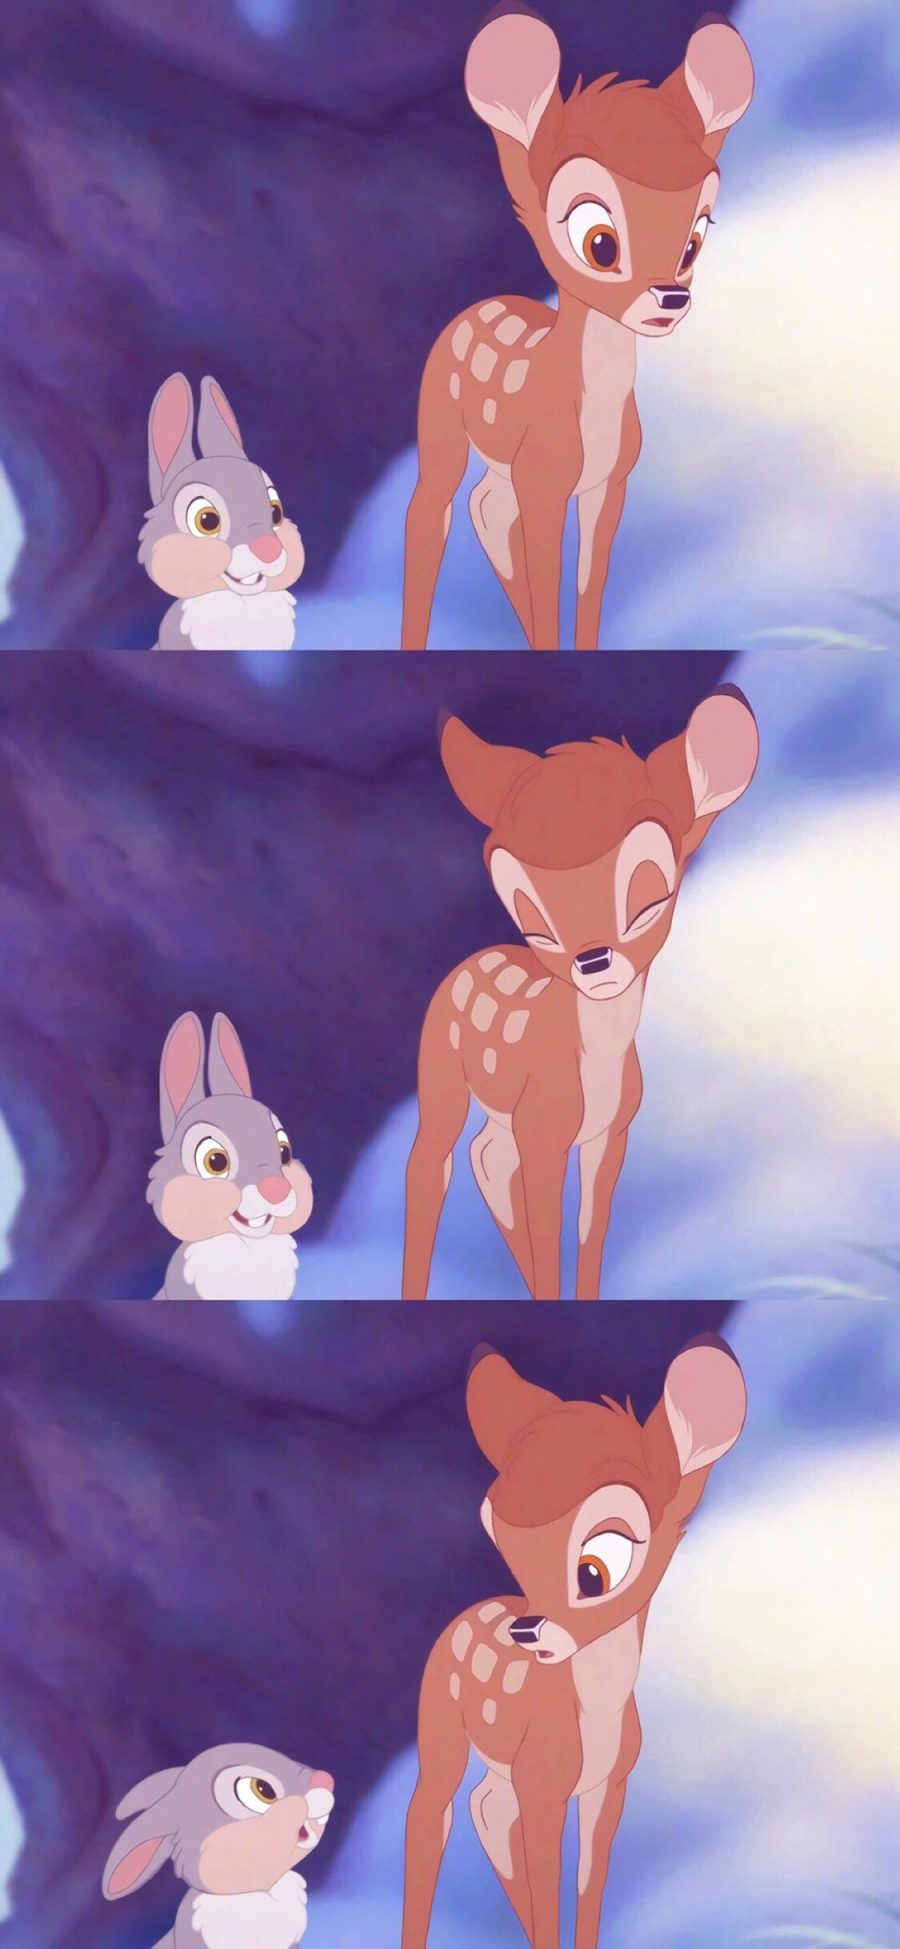 [2436×1125]迪士尼 动画 小鹿斑比 桑普兔 苹果手机动漫壁纸图片